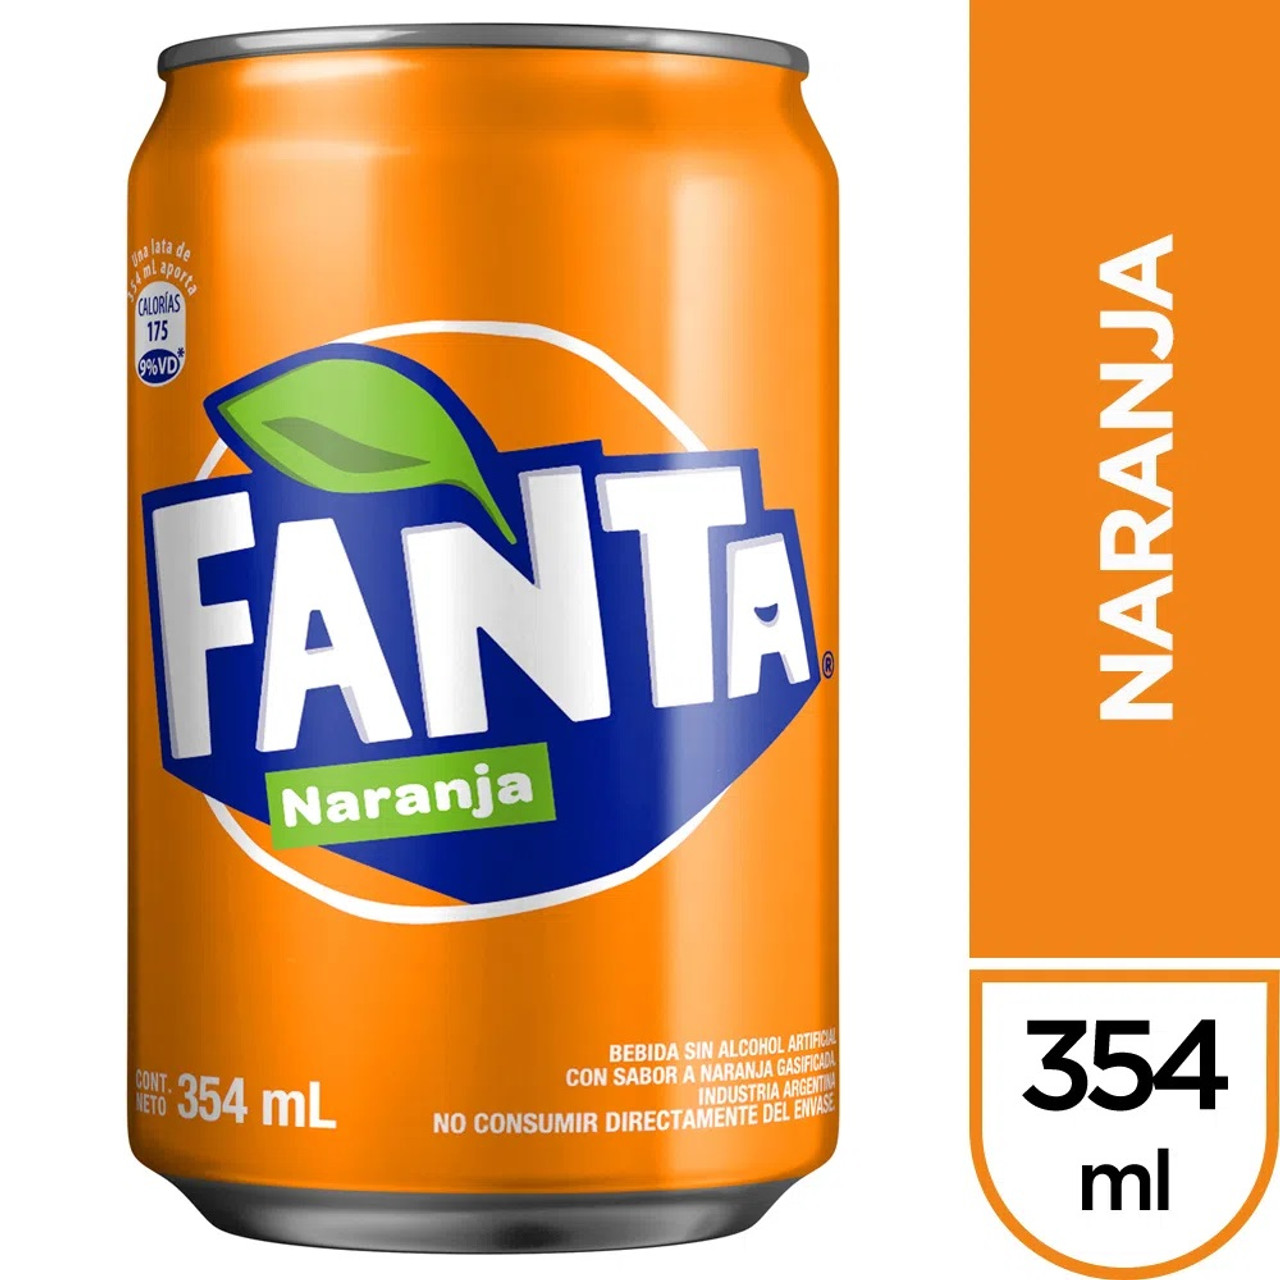 Buy Fanta naranja 1/2 litro mexicana in Texas